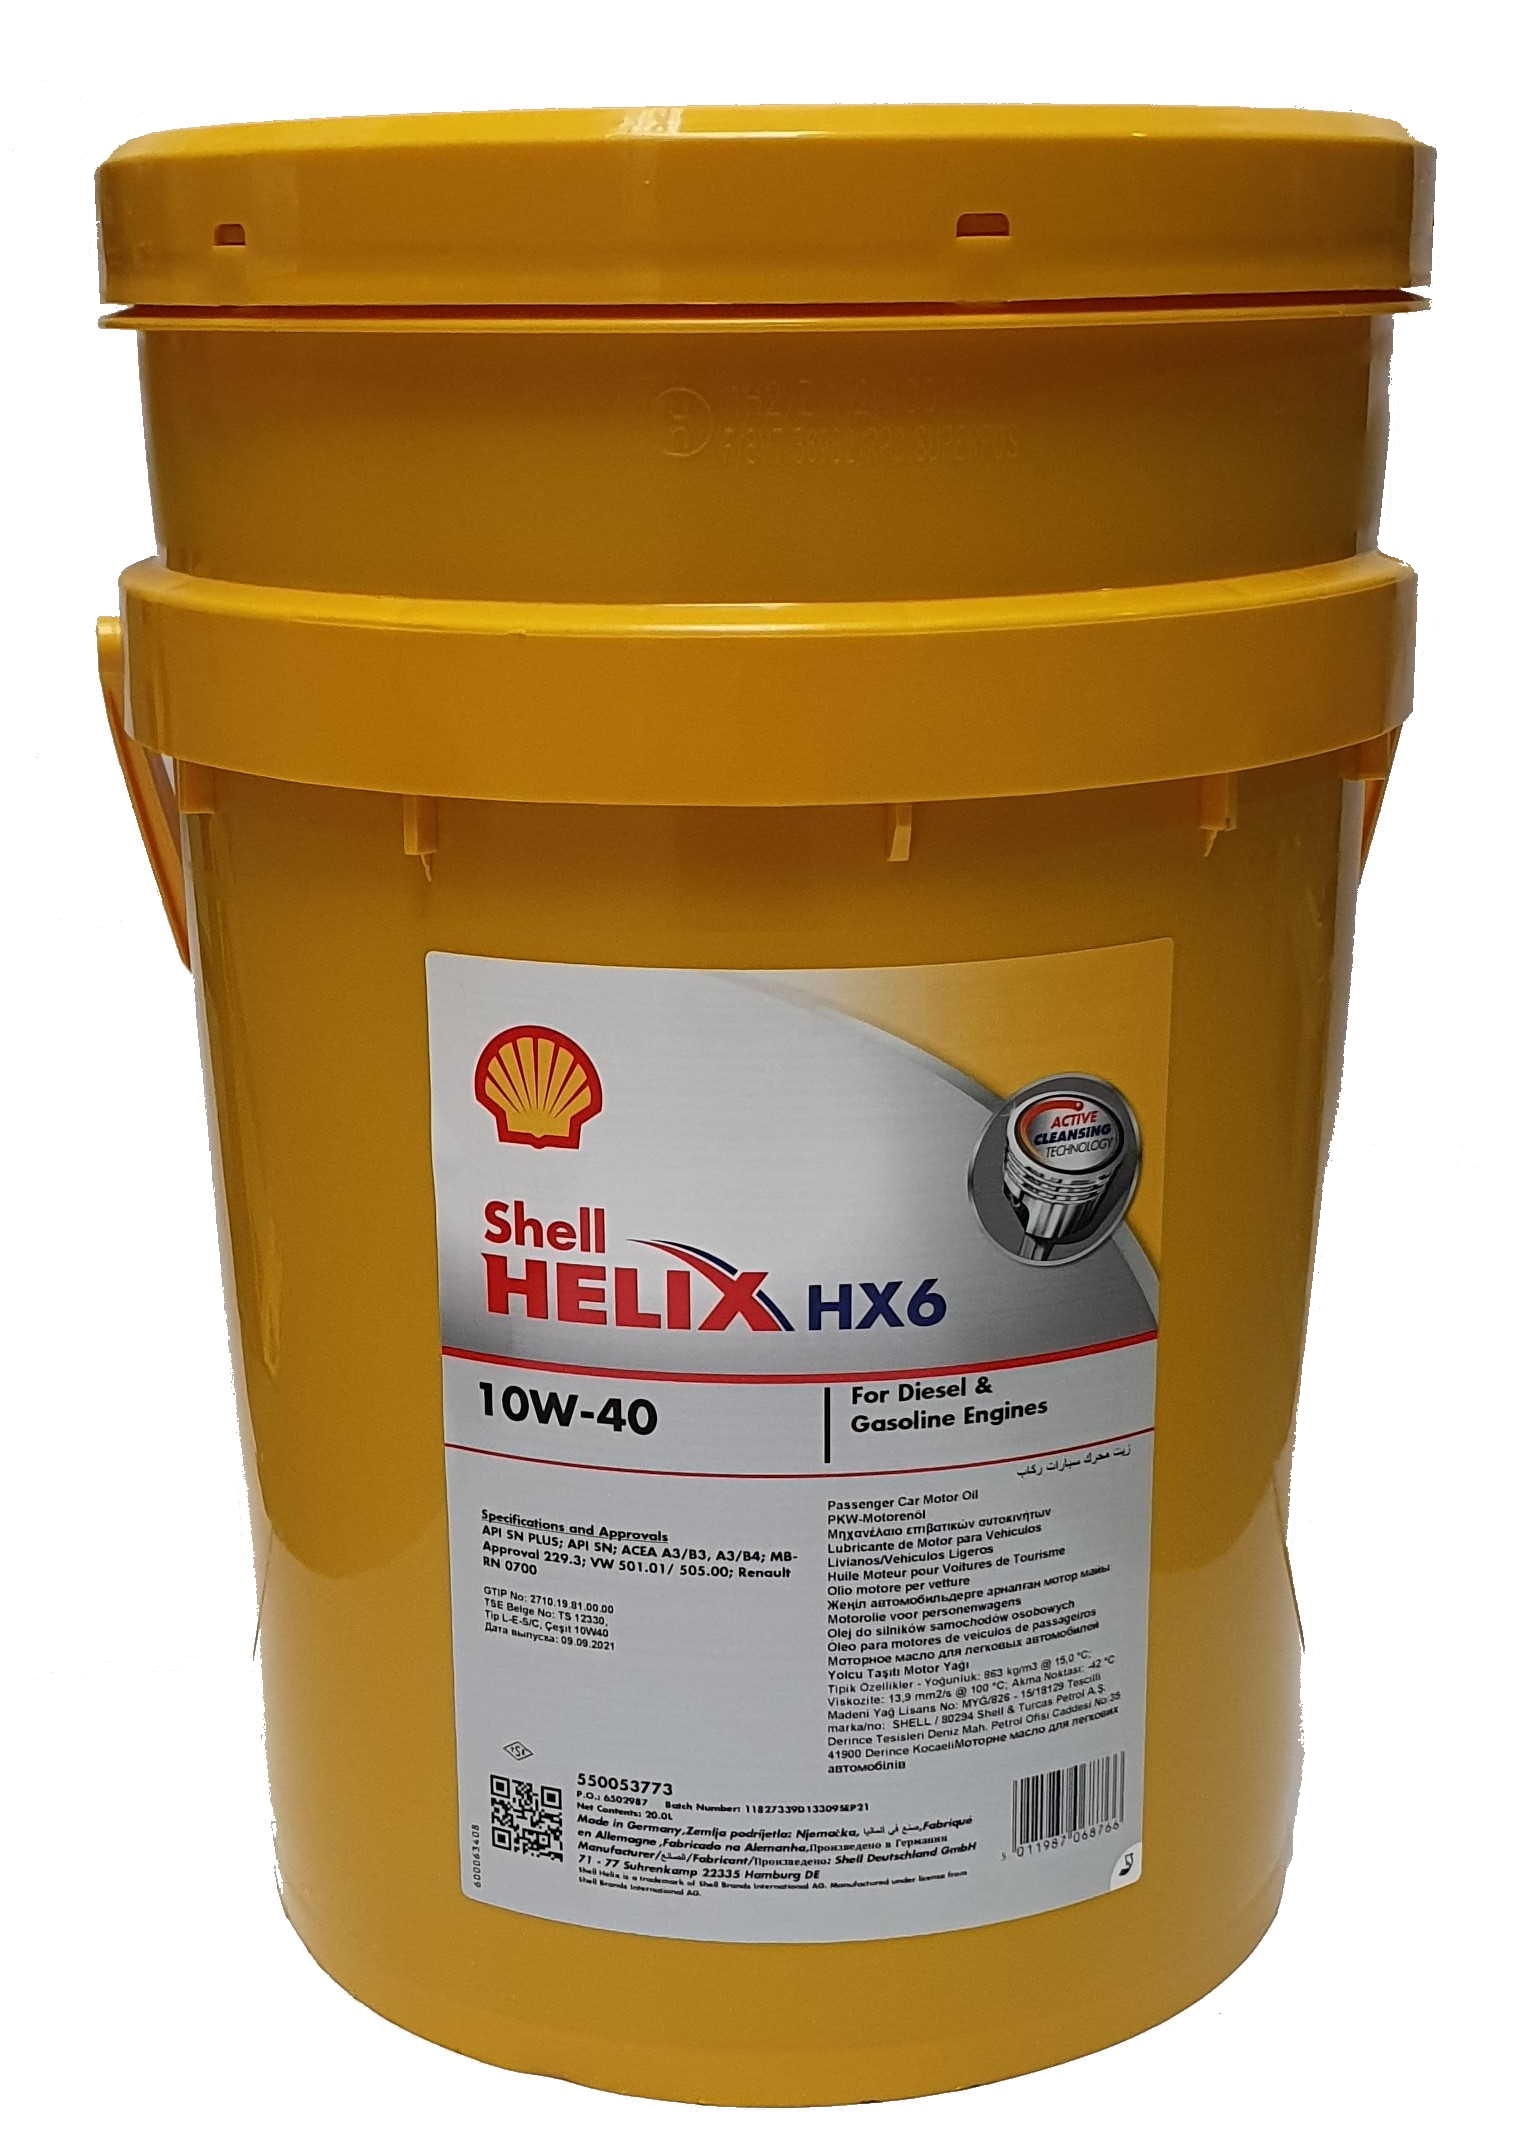 Shell Helix HX6 10W-40 20 Liter